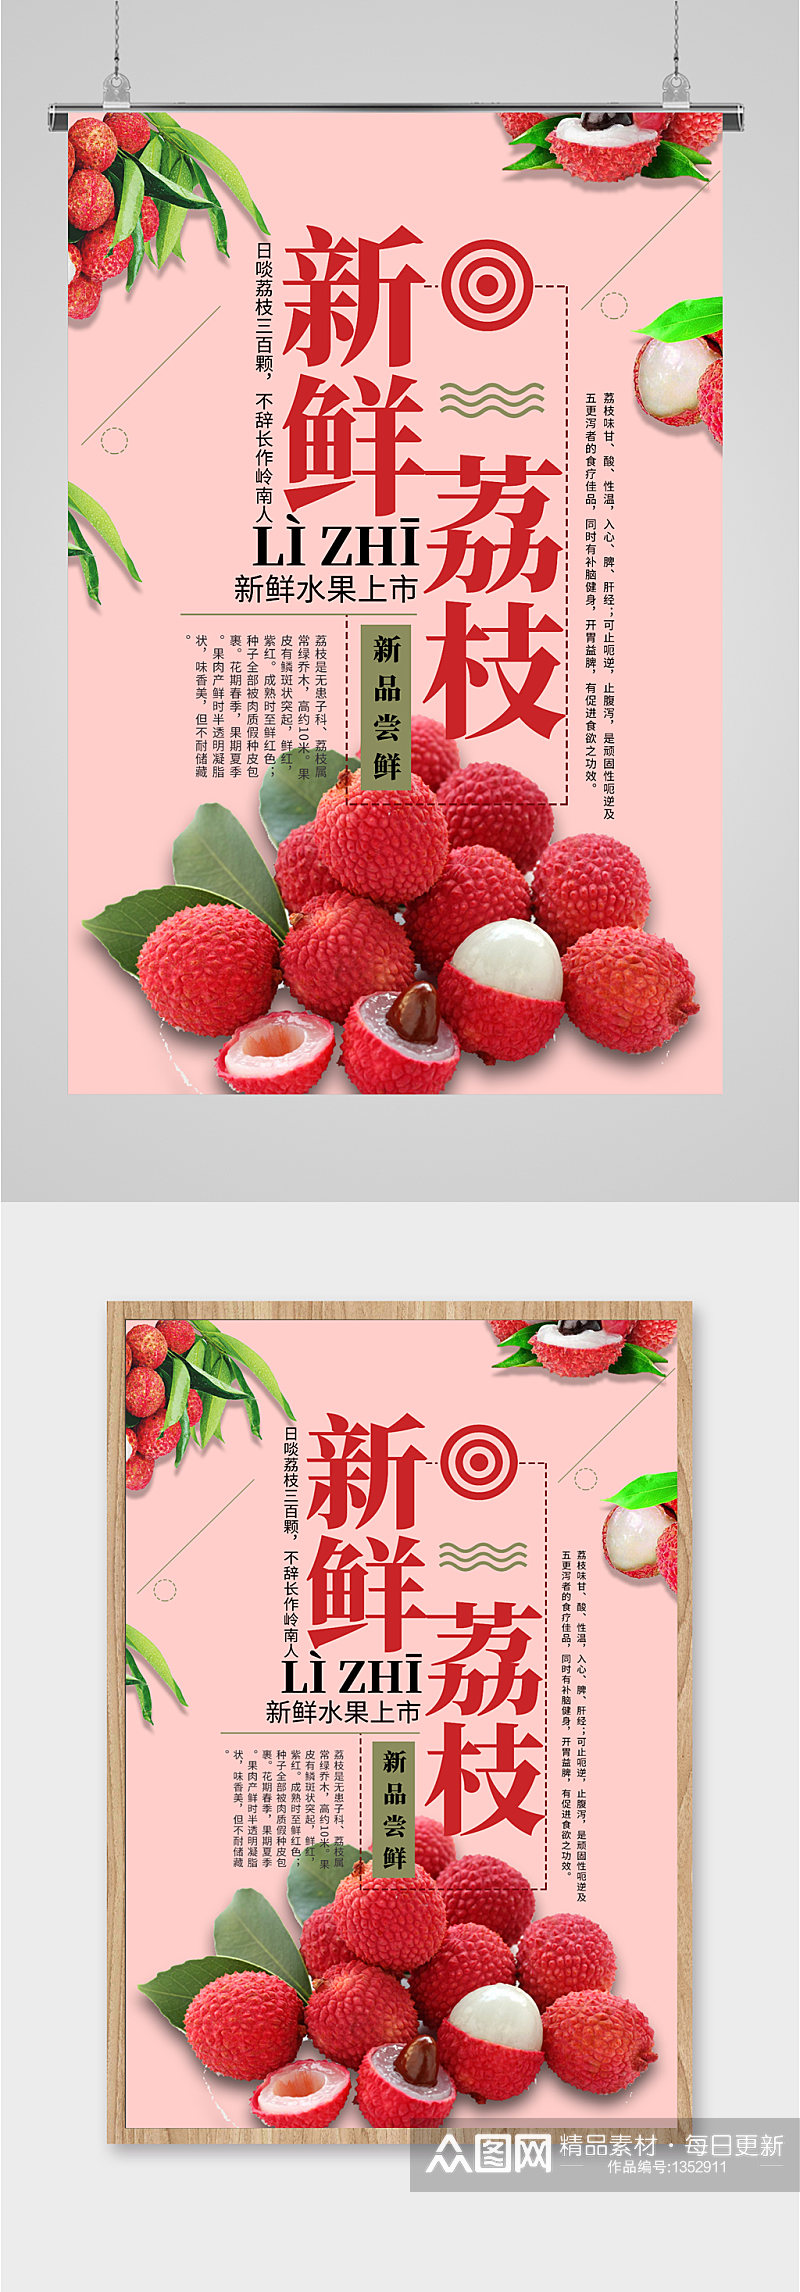 新鲜荔枝水果促销海报素材